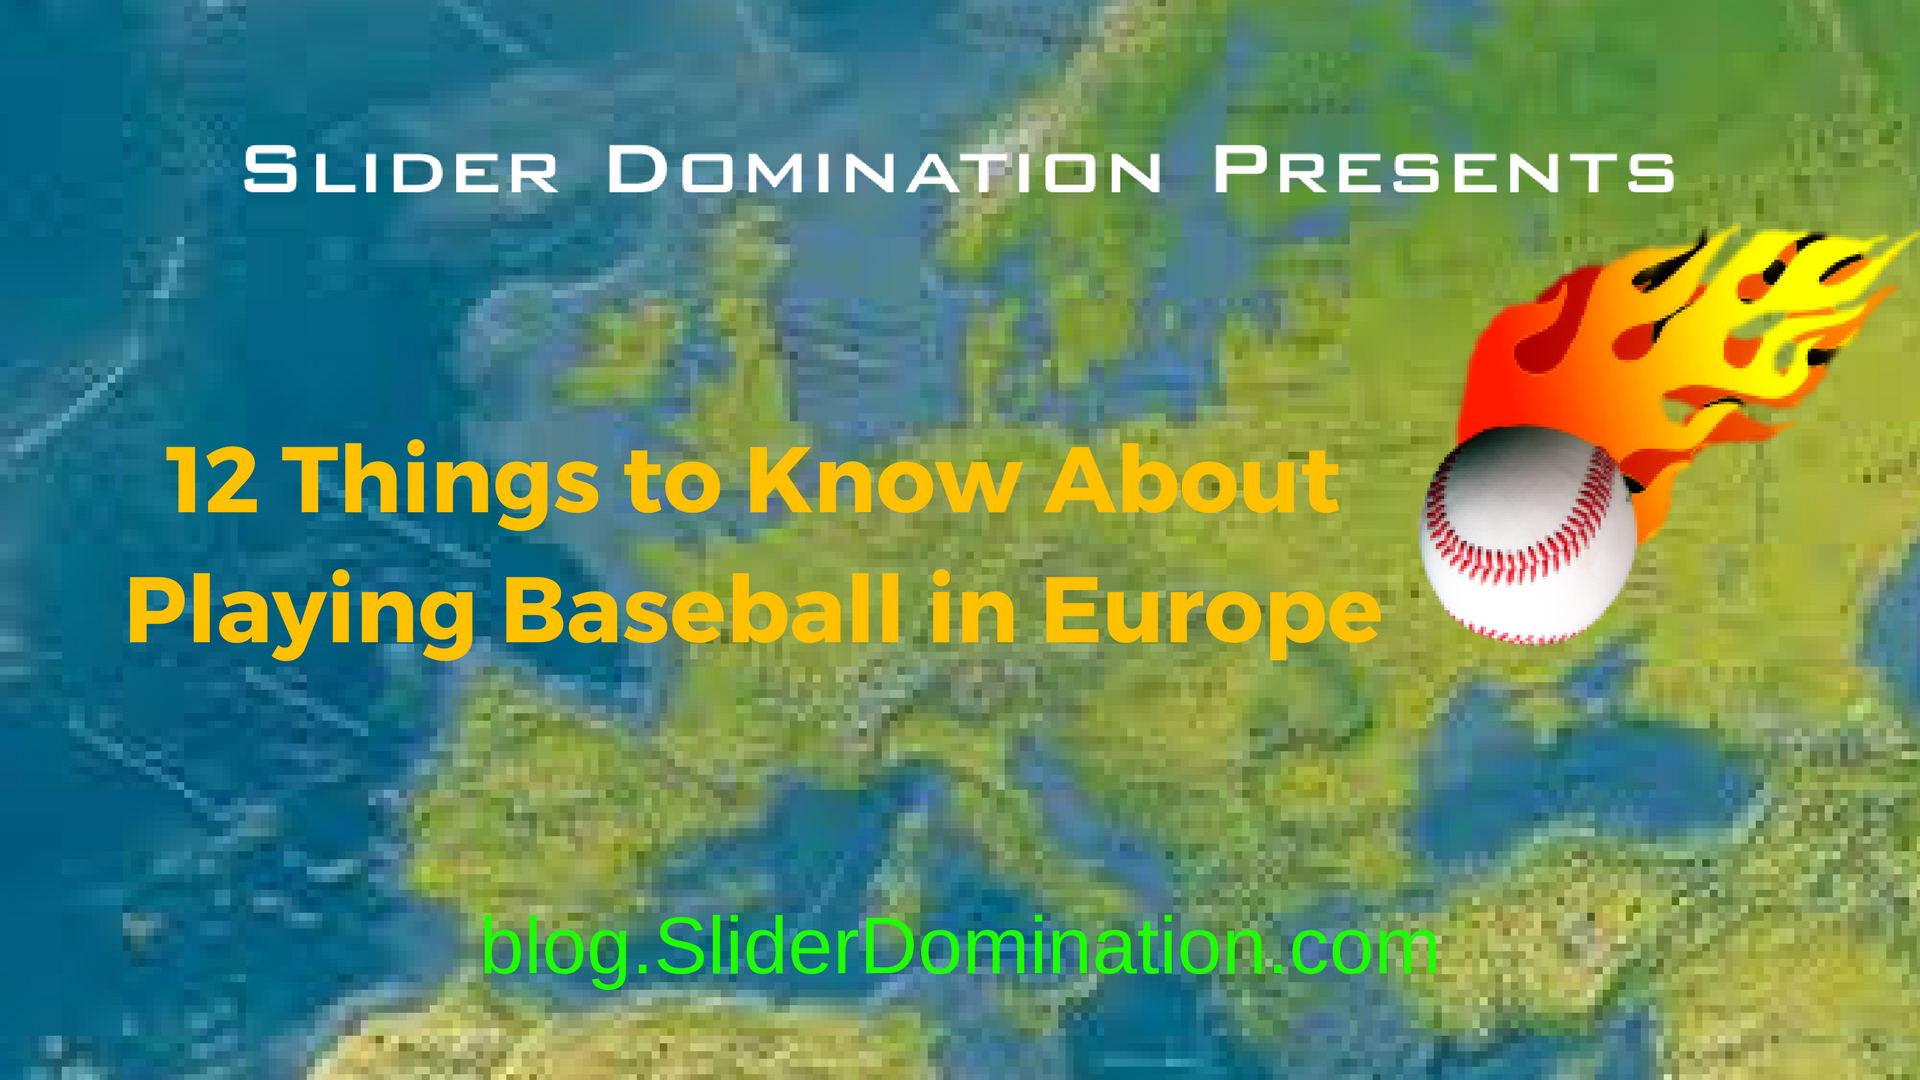 Playing Baseball in Europe